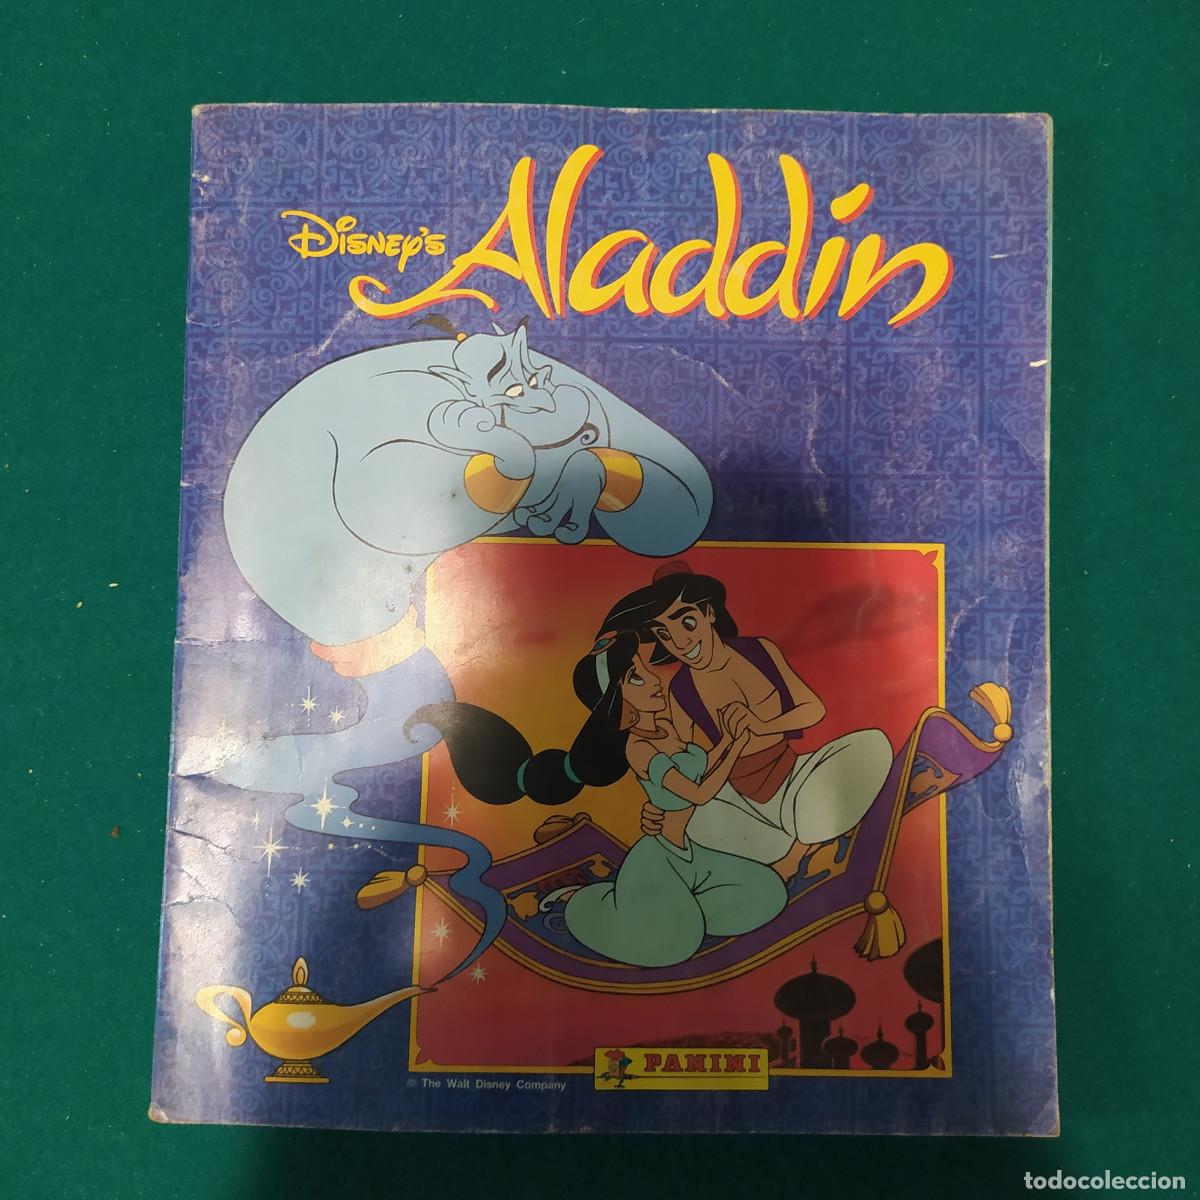 caja de hojalata algodon mágico aladdin - Compra venta en todocoleccion